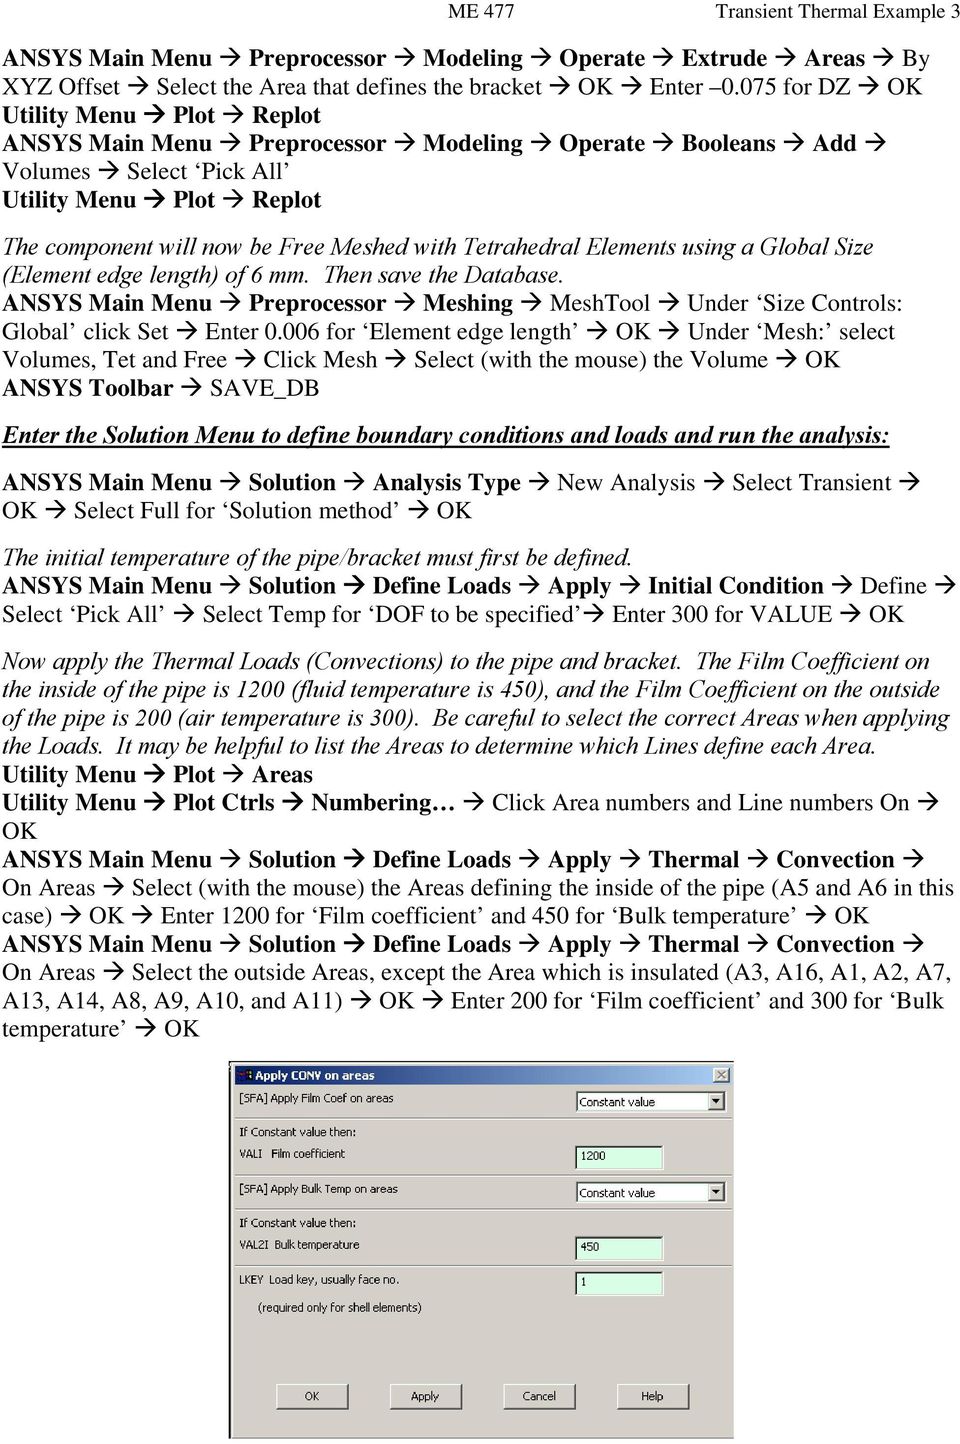 ansys thermal analysis tutorial pdf